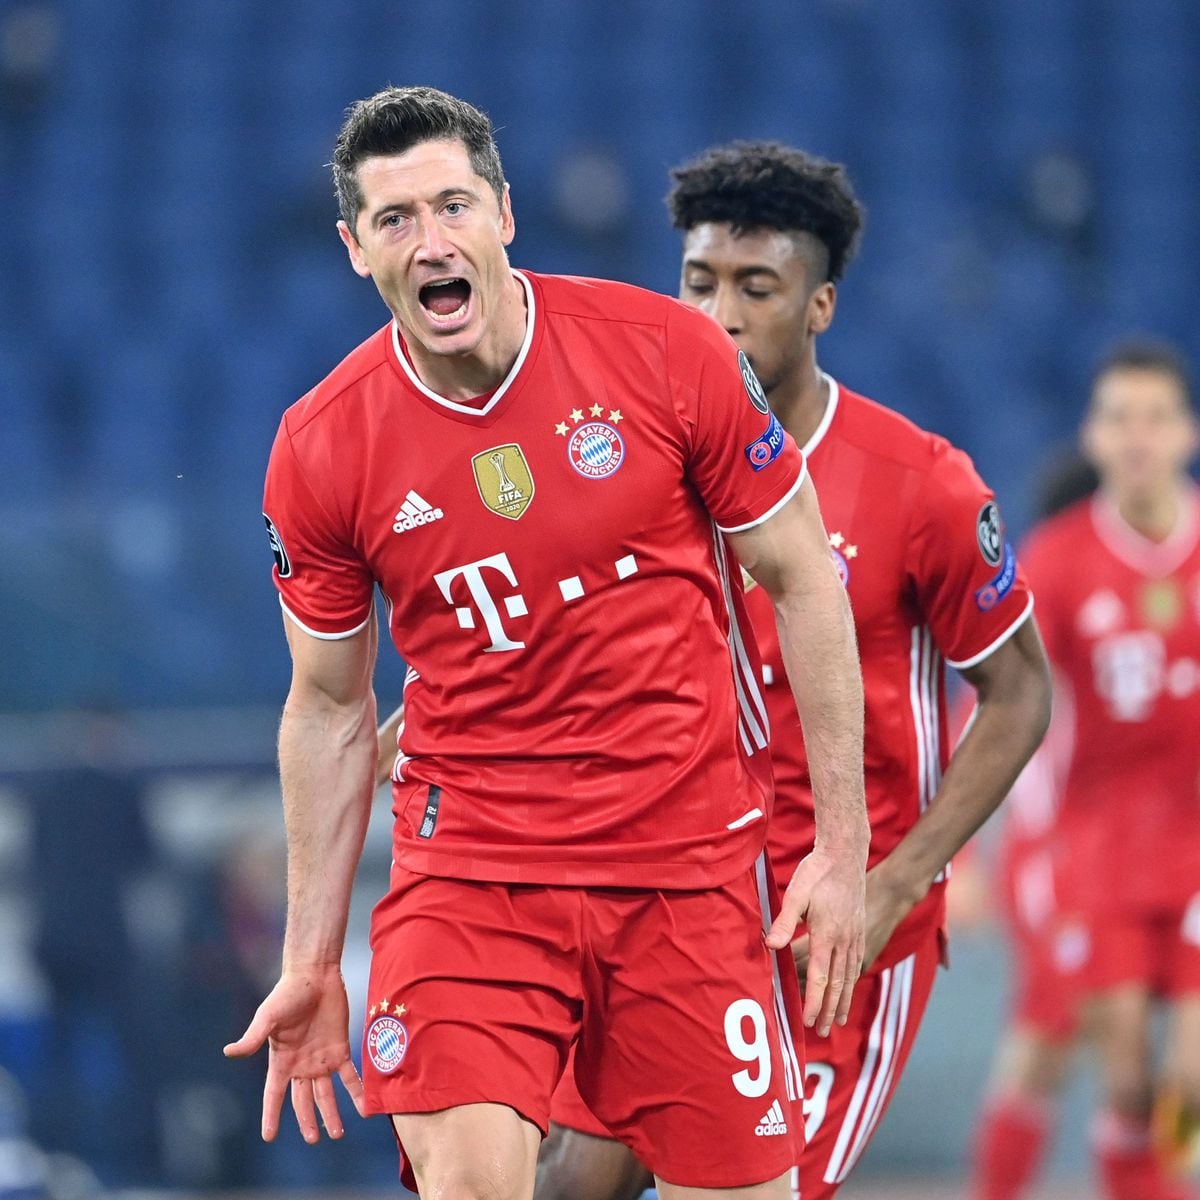 El campeón está fuerte. Bayern Munich aplasta a Lazio en los octavos de la Champions